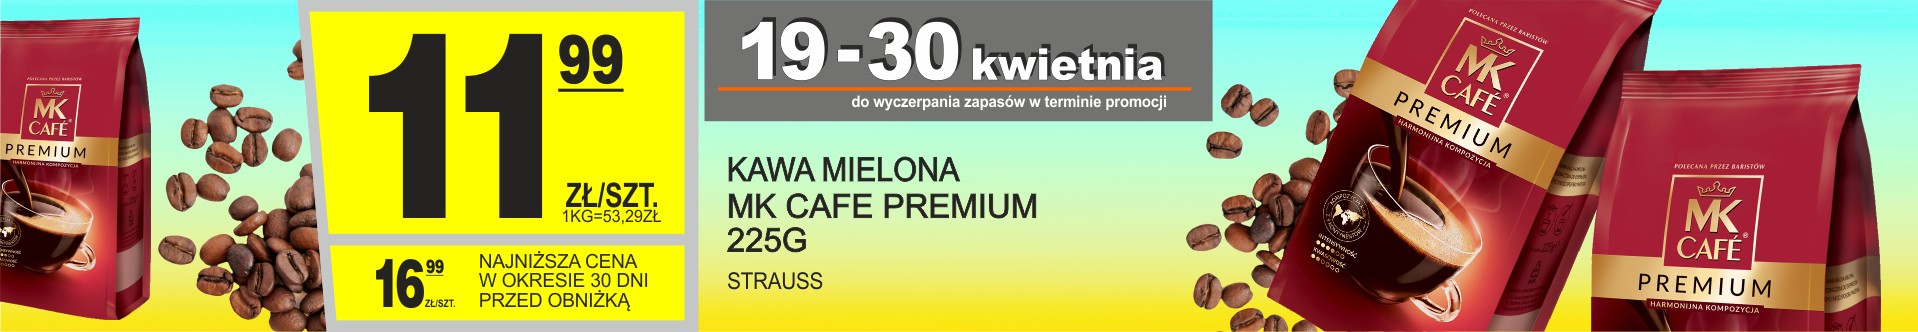 Sklepy Społem - KAWA MIELONA MK CAFE PREMIUM 225G